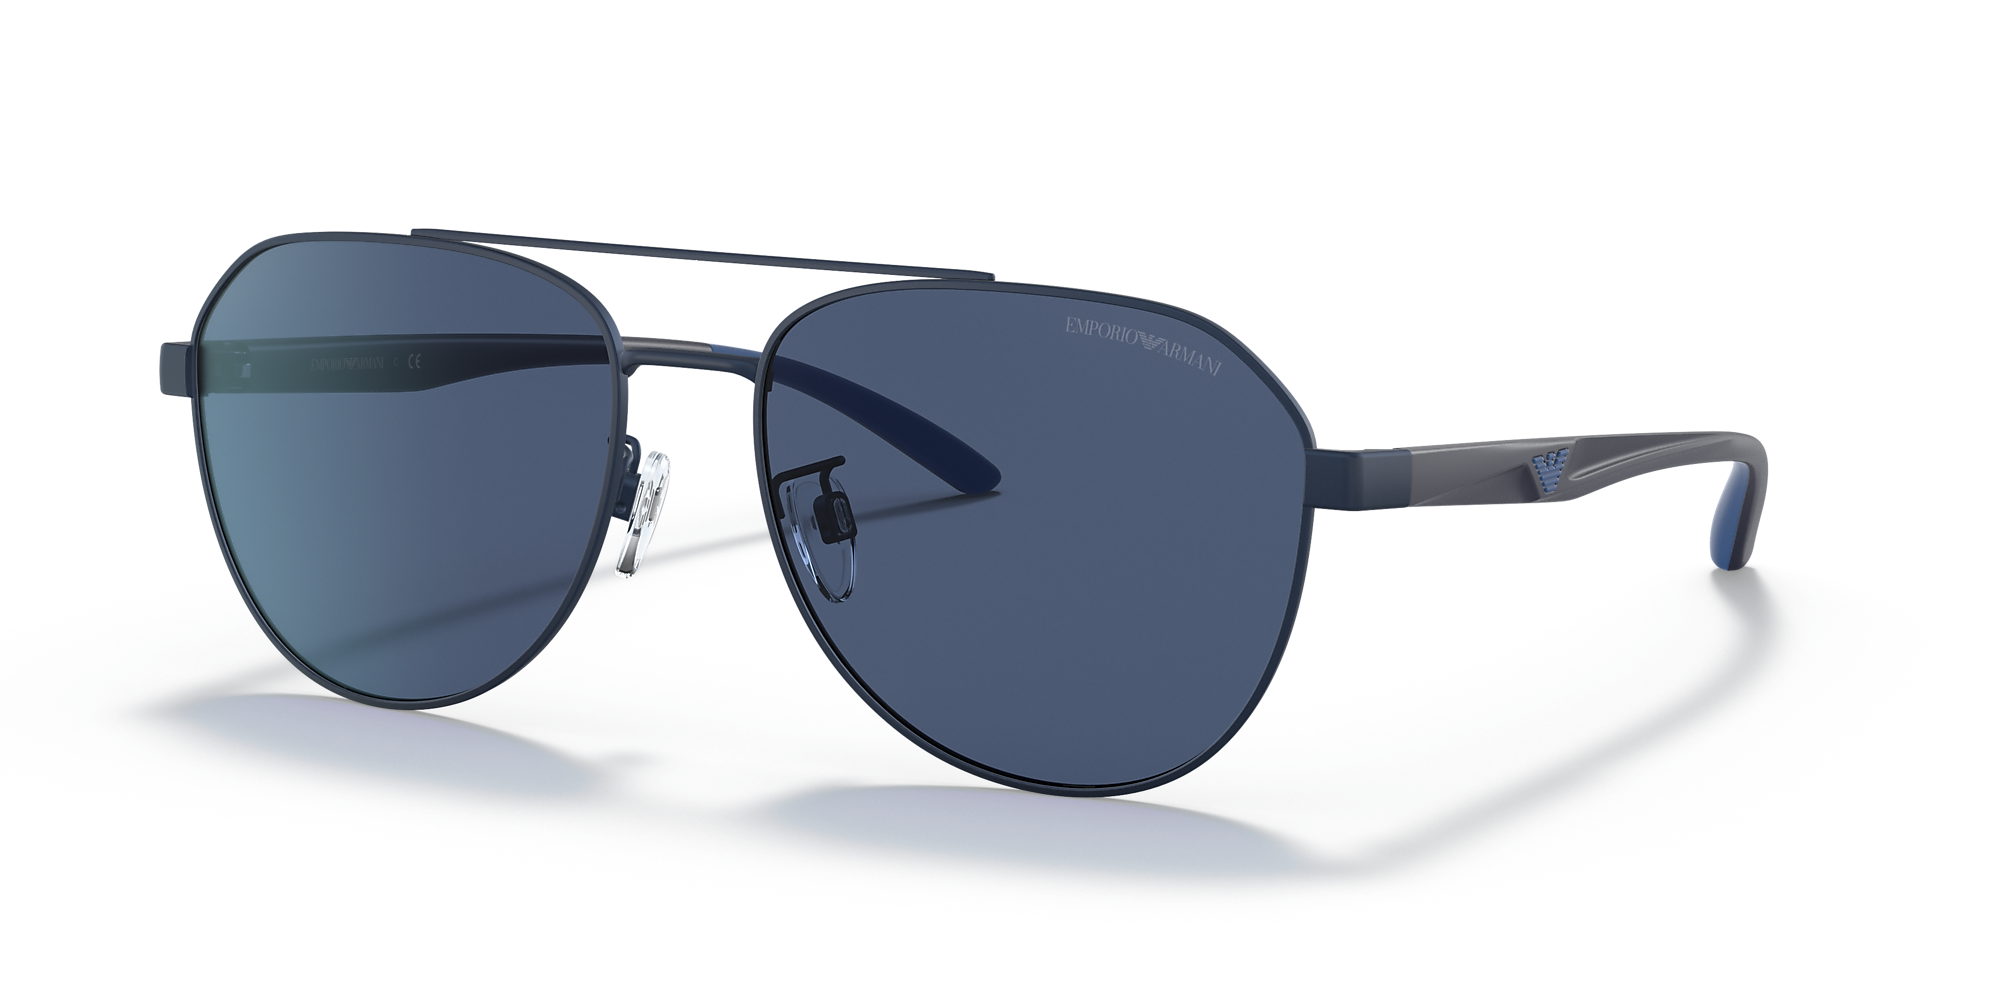 Emporio Armani EA2129D 59 Dark Blue & Matte Blue Sunglasses | Sunglass ...